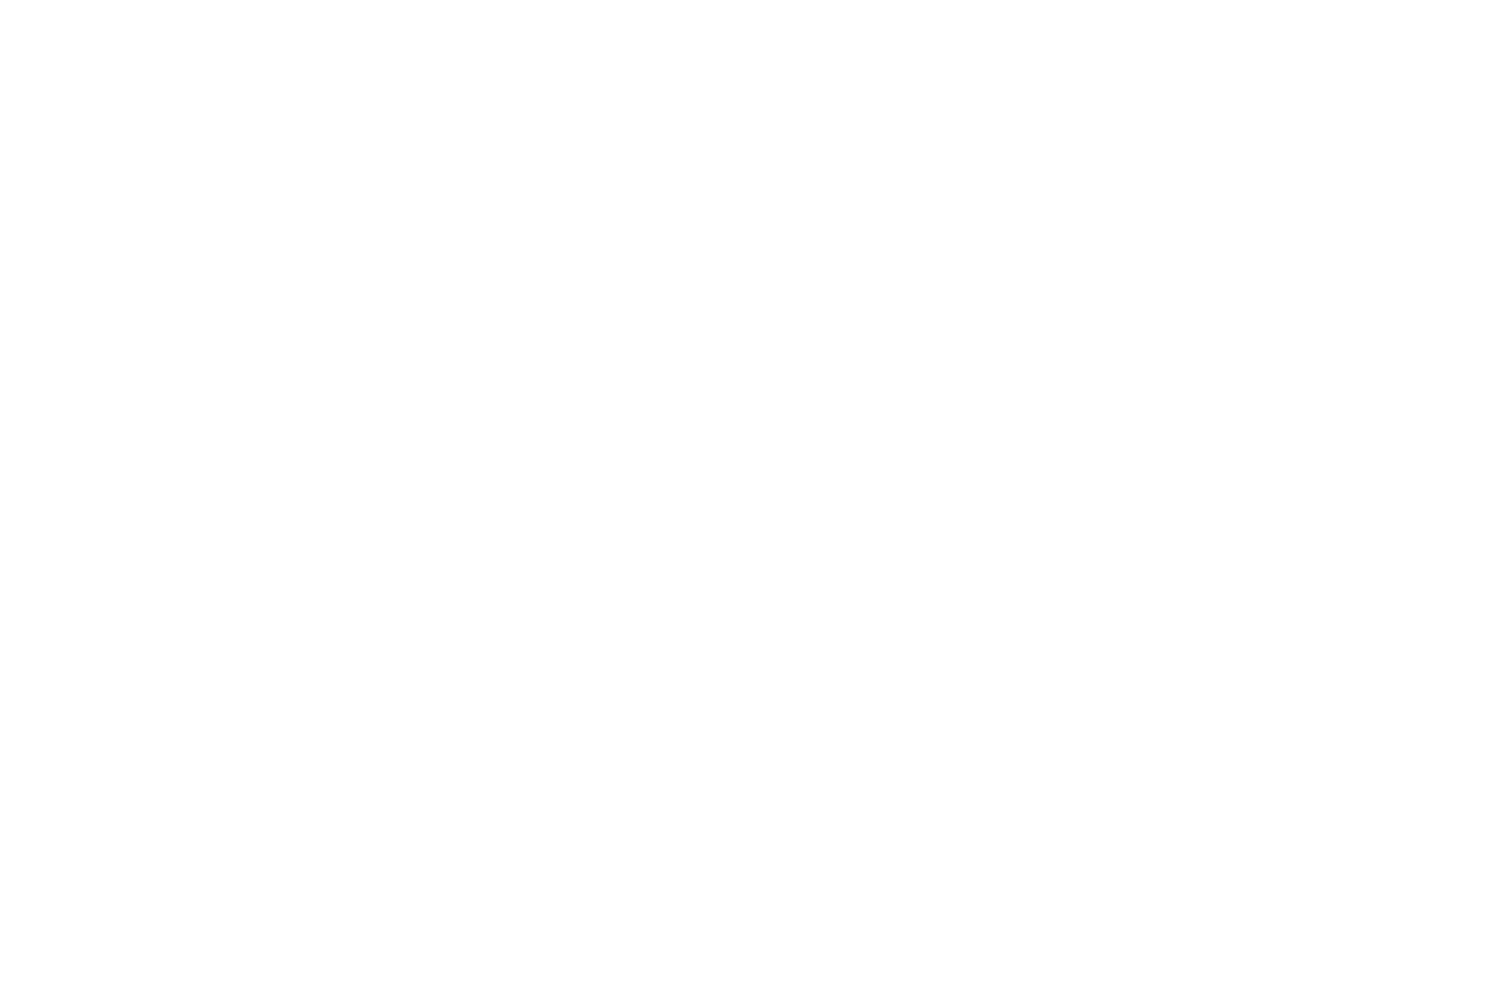 Twelve Spies